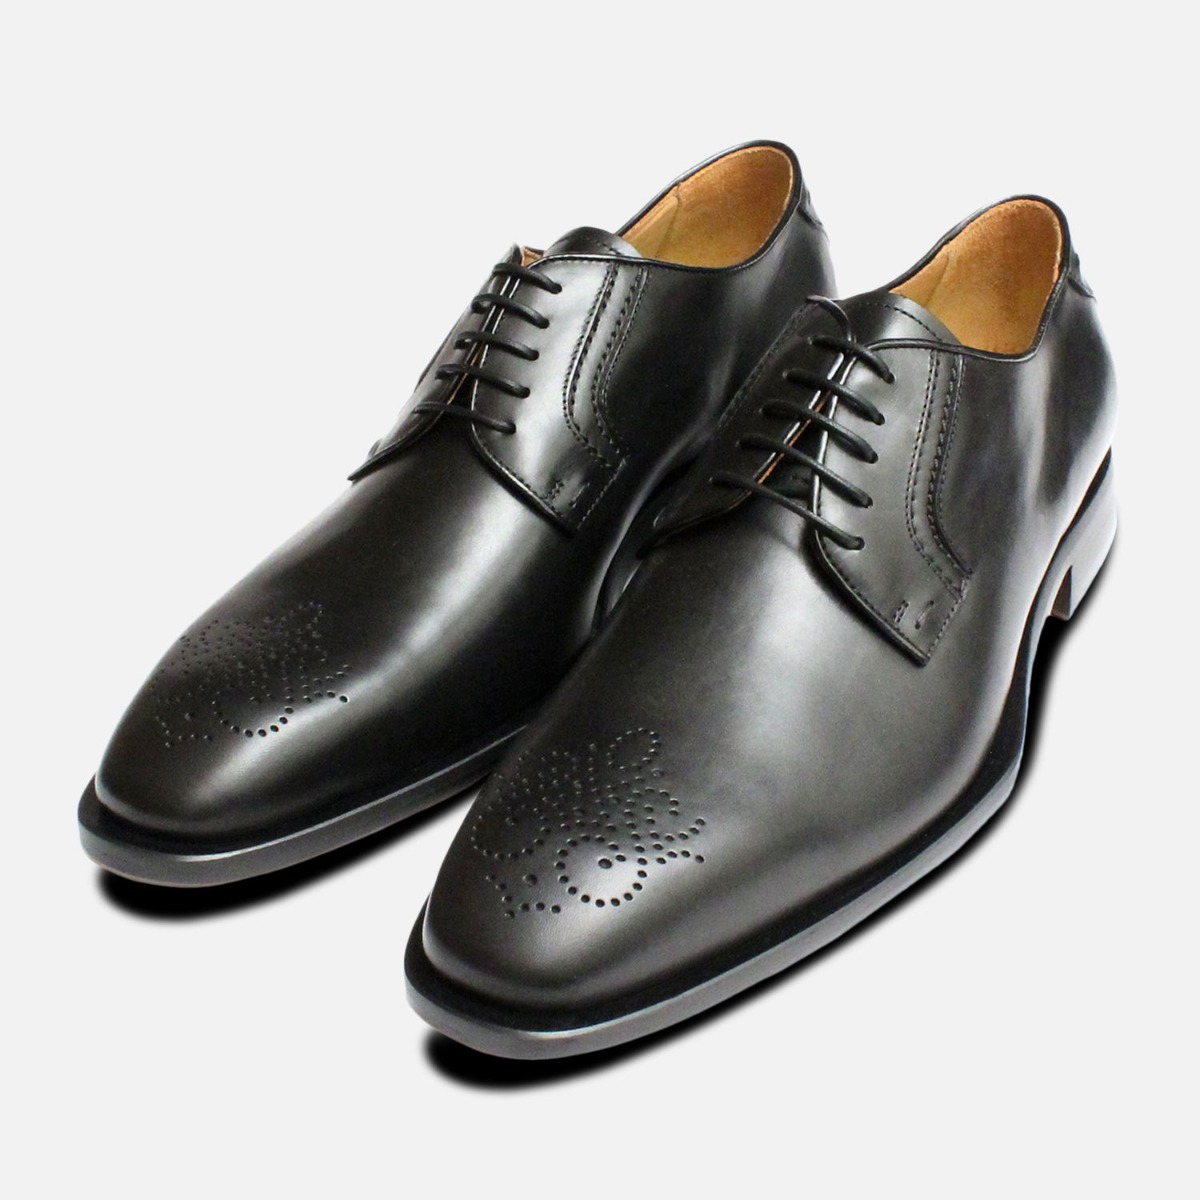 oliver sweeney black shoes